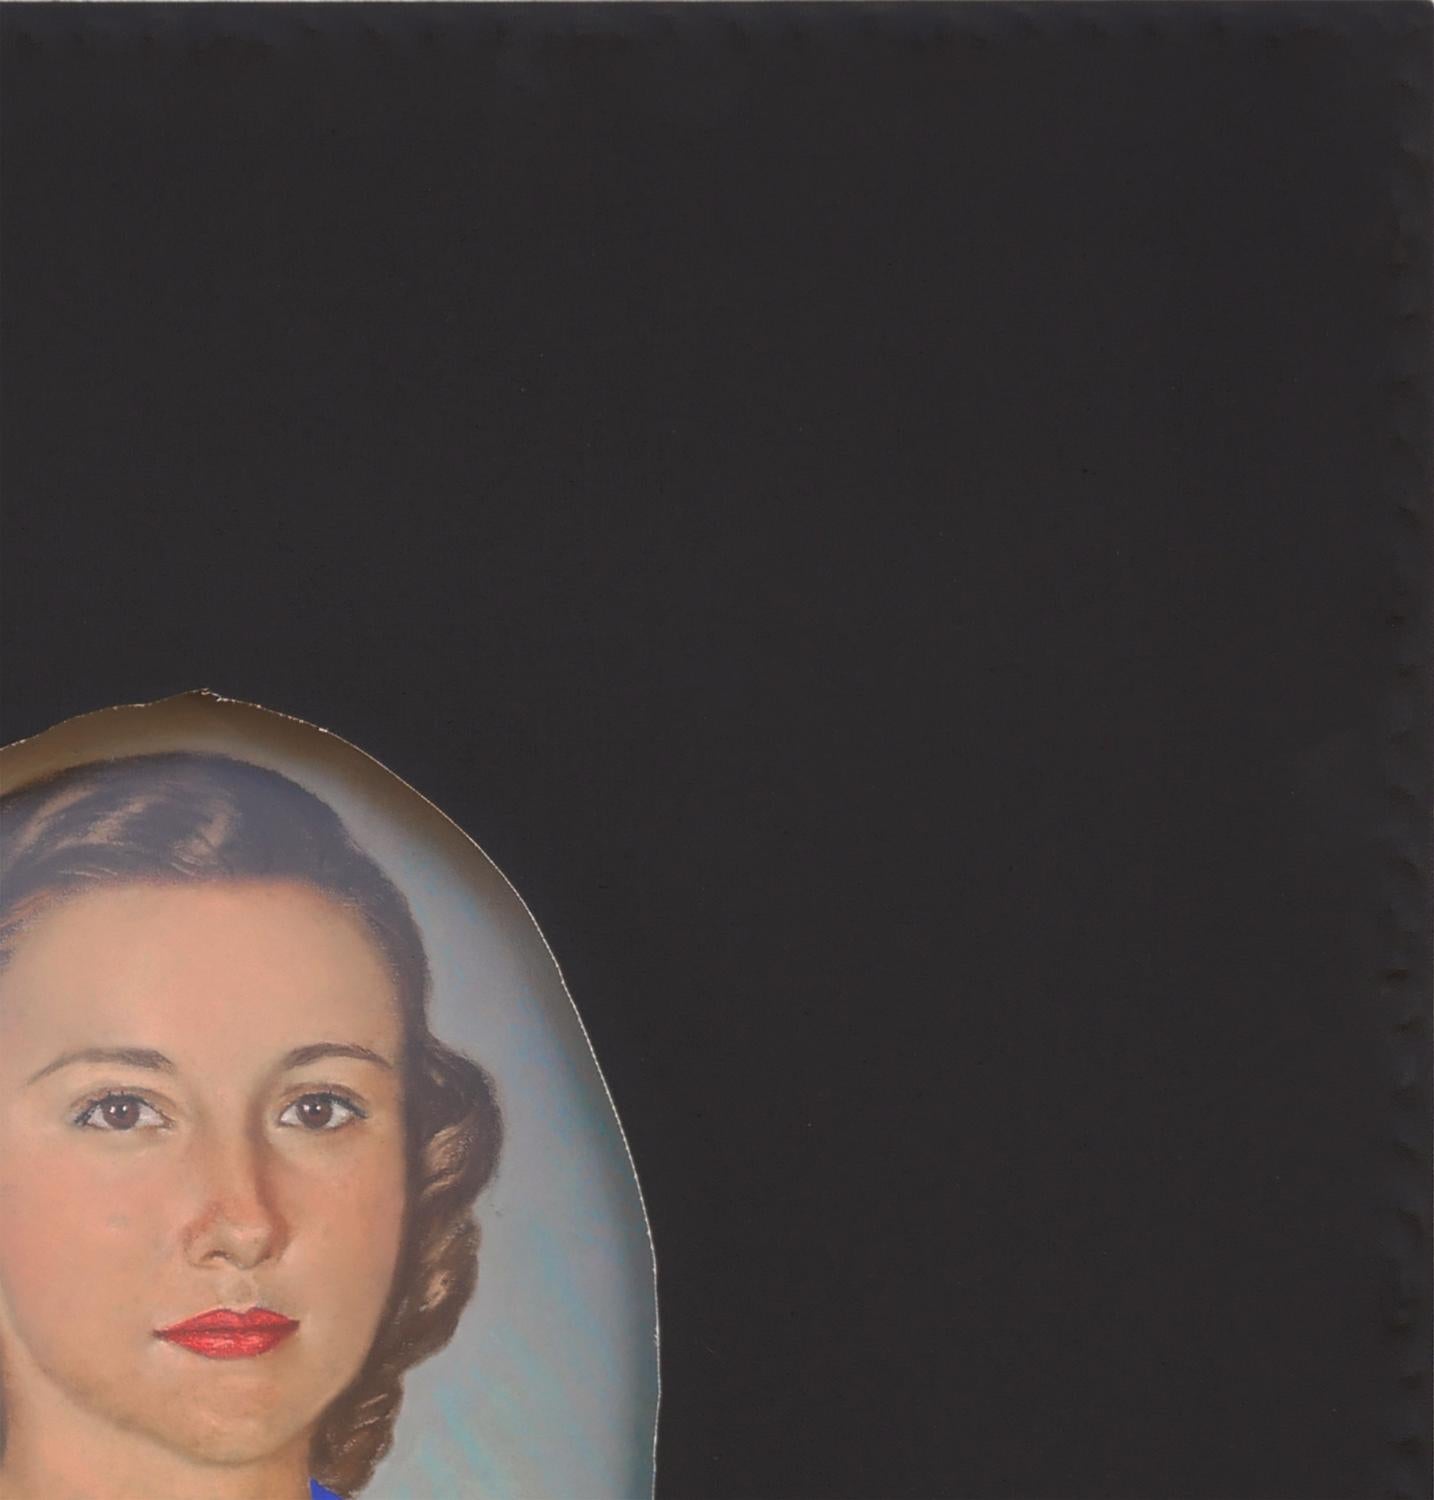 Dreidimensionale konzeptionelle Malerei des zeitgenössischen Künstlers Matthew Reeves aus Houston, TX. Das Werk zeigt ein Vintage-Porträt mit einem gemalten, leuchtend blauen Kragen, über den eine schwarze Leinwand gespannt ist. Der Künstler hat